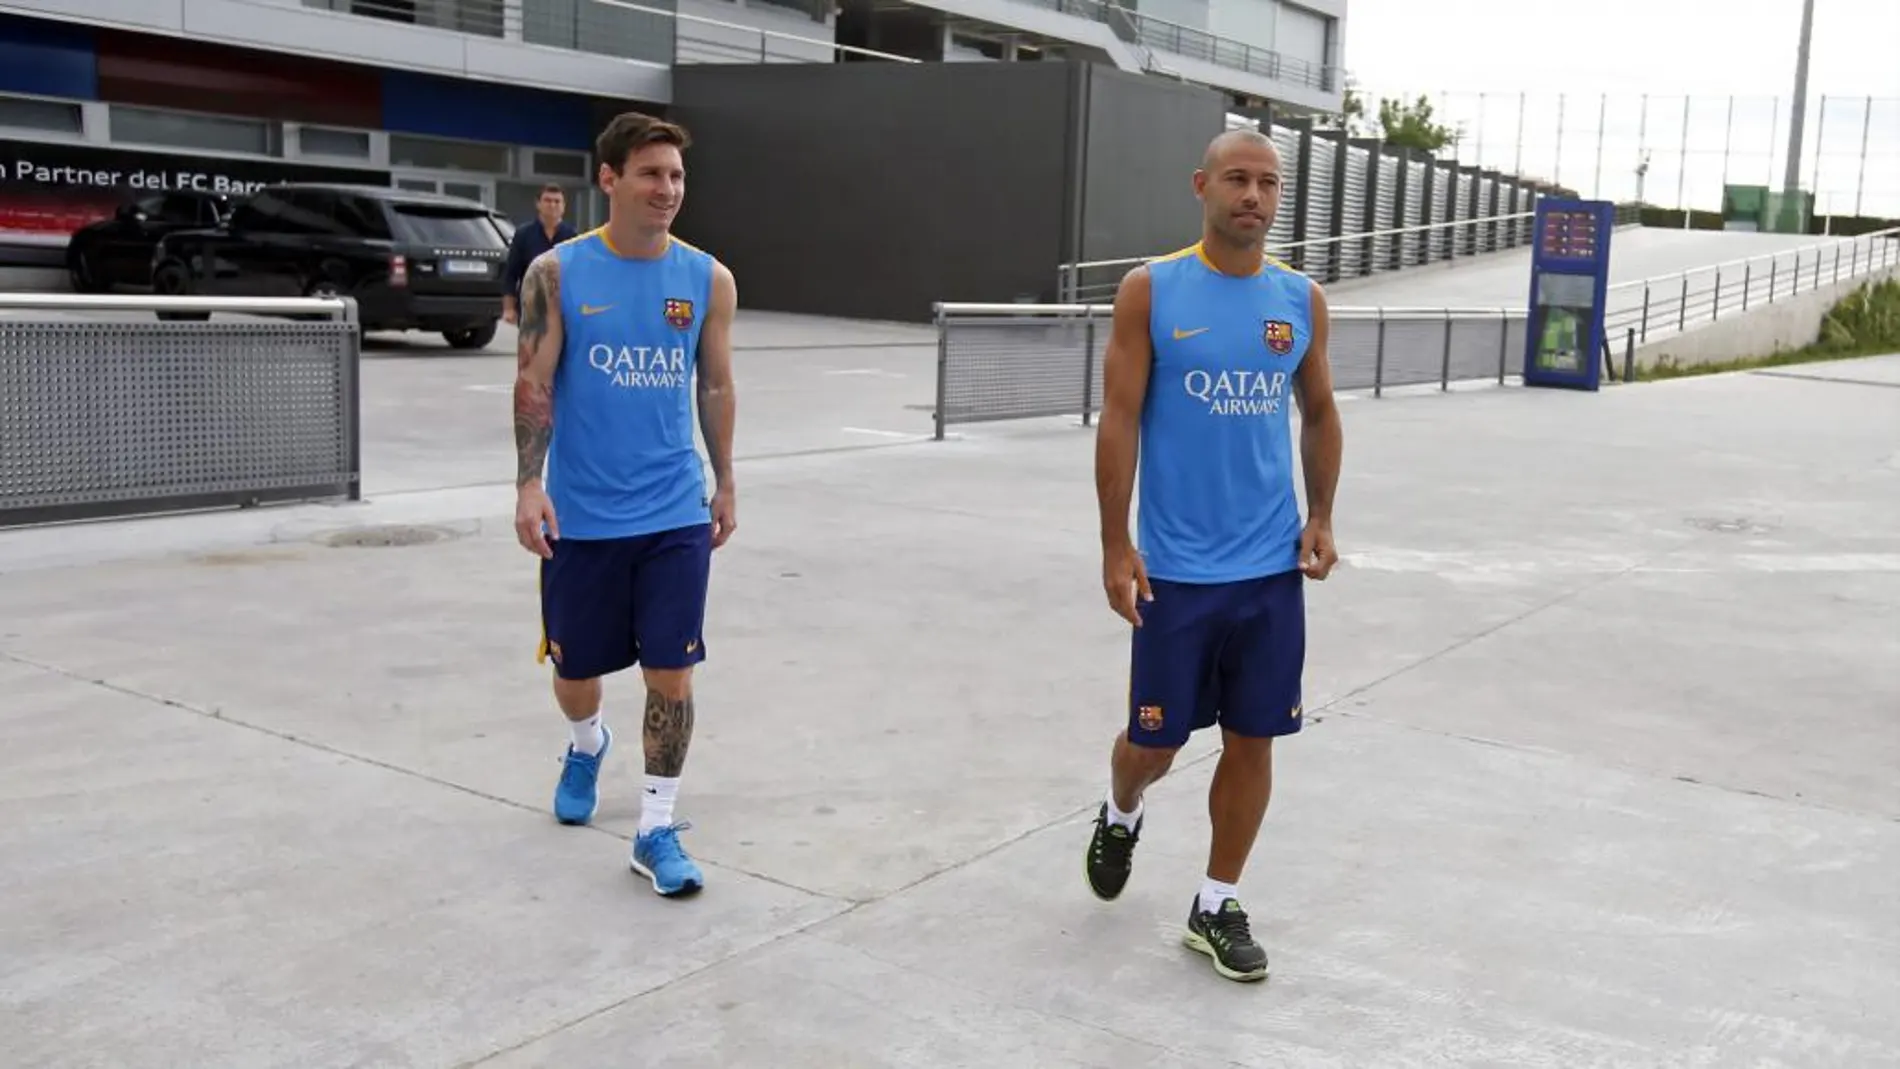 Fotografía cedida por el FC Barcelona de Lionel Mess y Javier Mascherano, que han regresado de vacaciones y han pasado esta mañana las pruebas medicas